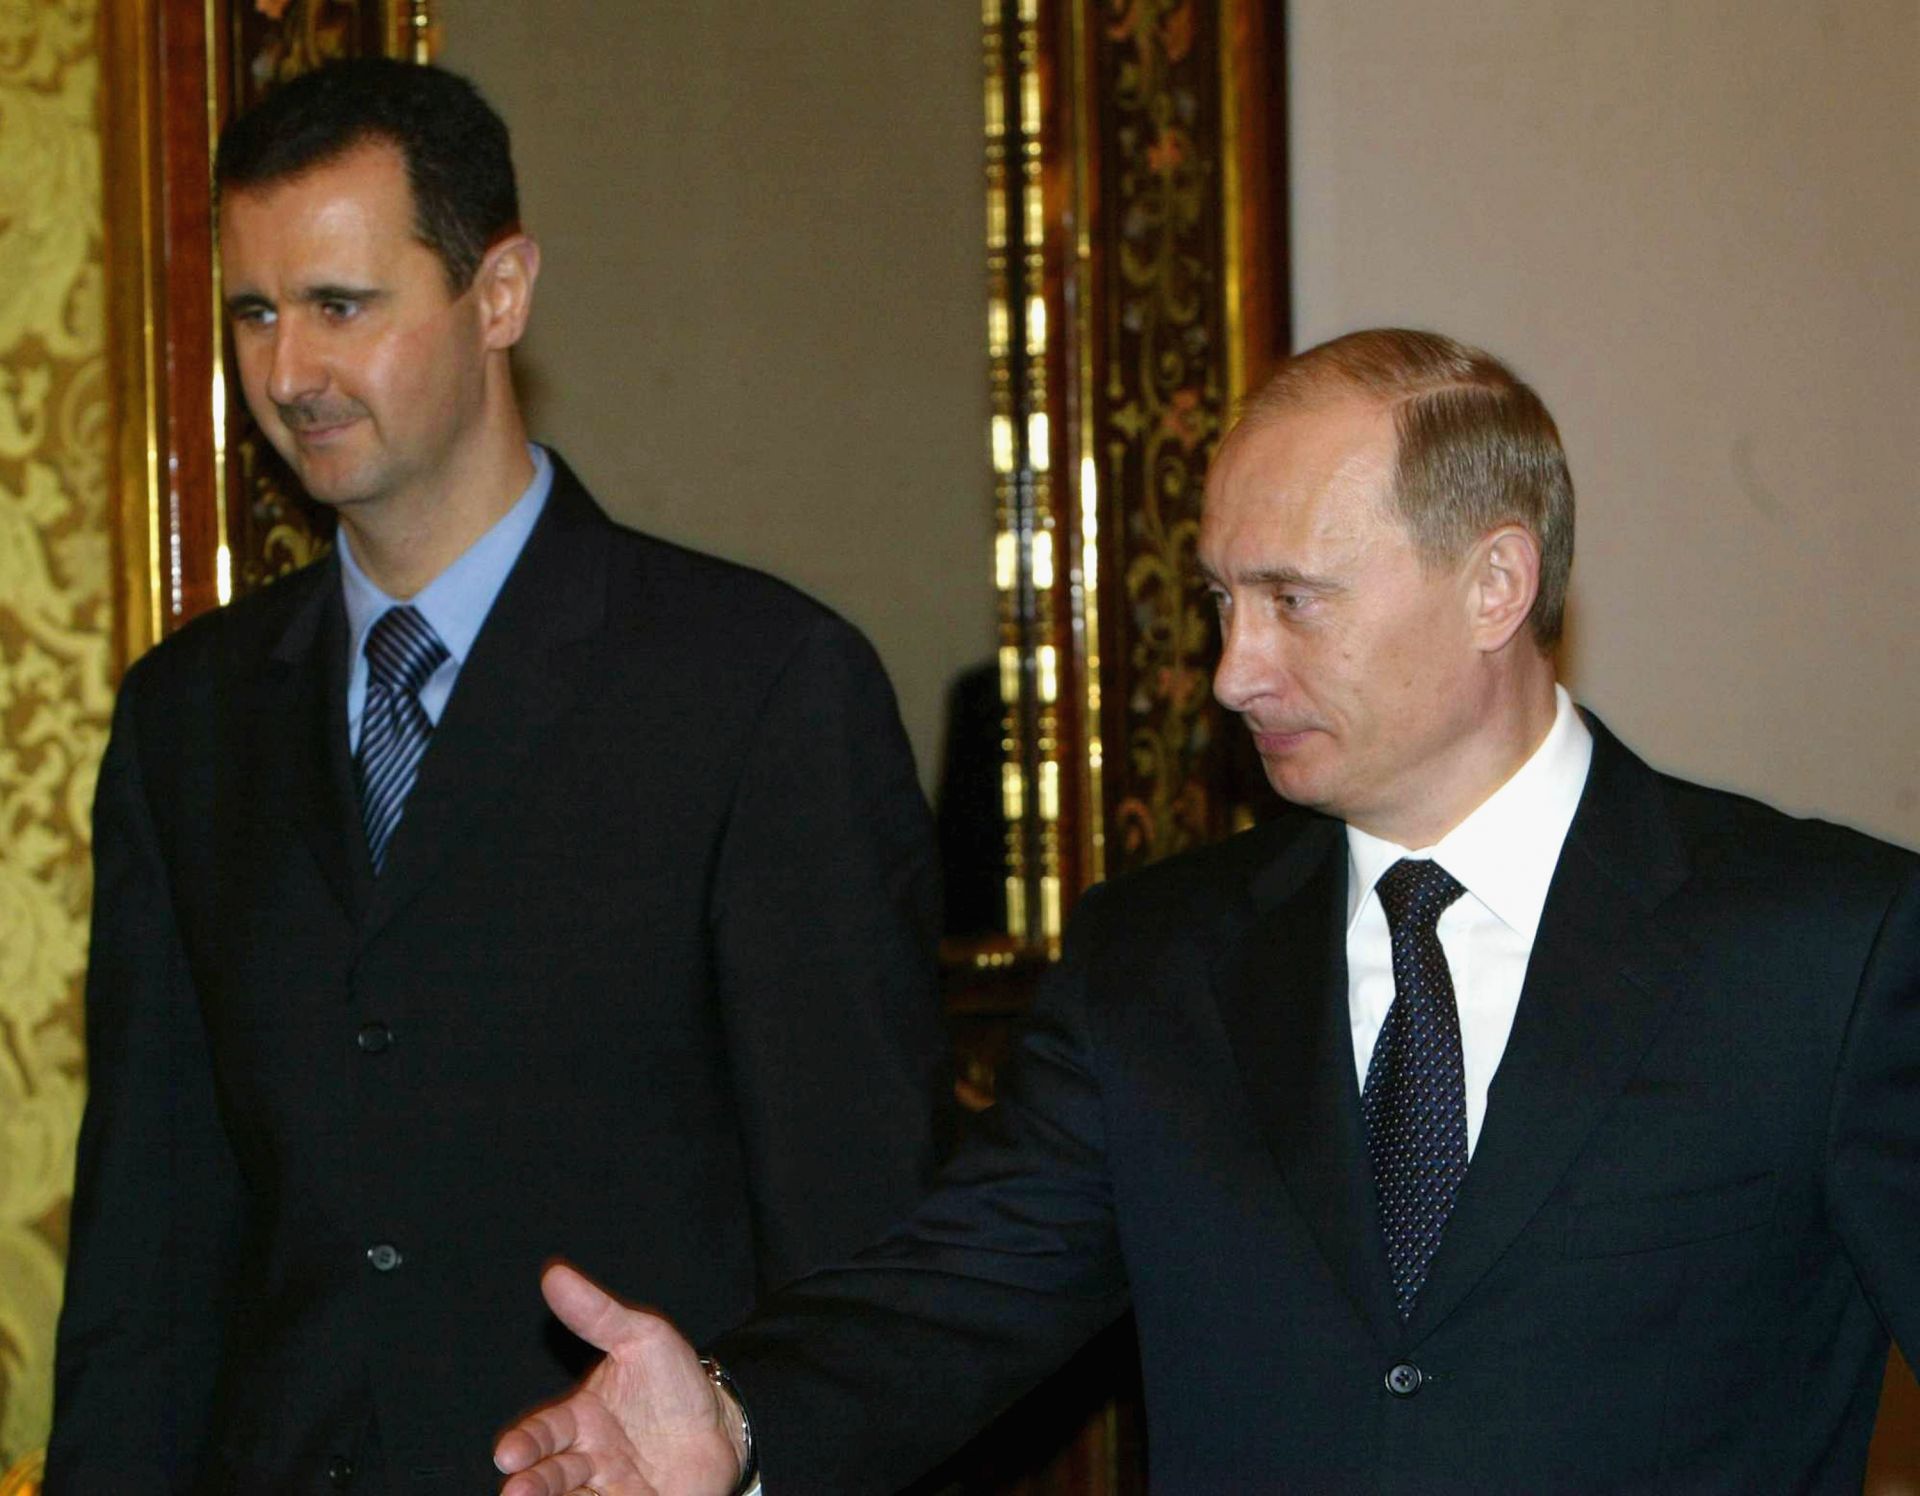 25 януари 2005 г. - Владимир Путин приема сирийския президент Башар Асад по време на срещата им в Кремъл. Русия и Сирия постигнаха сделка за преструктуриране на дълг на Сирия от съветската епоха.